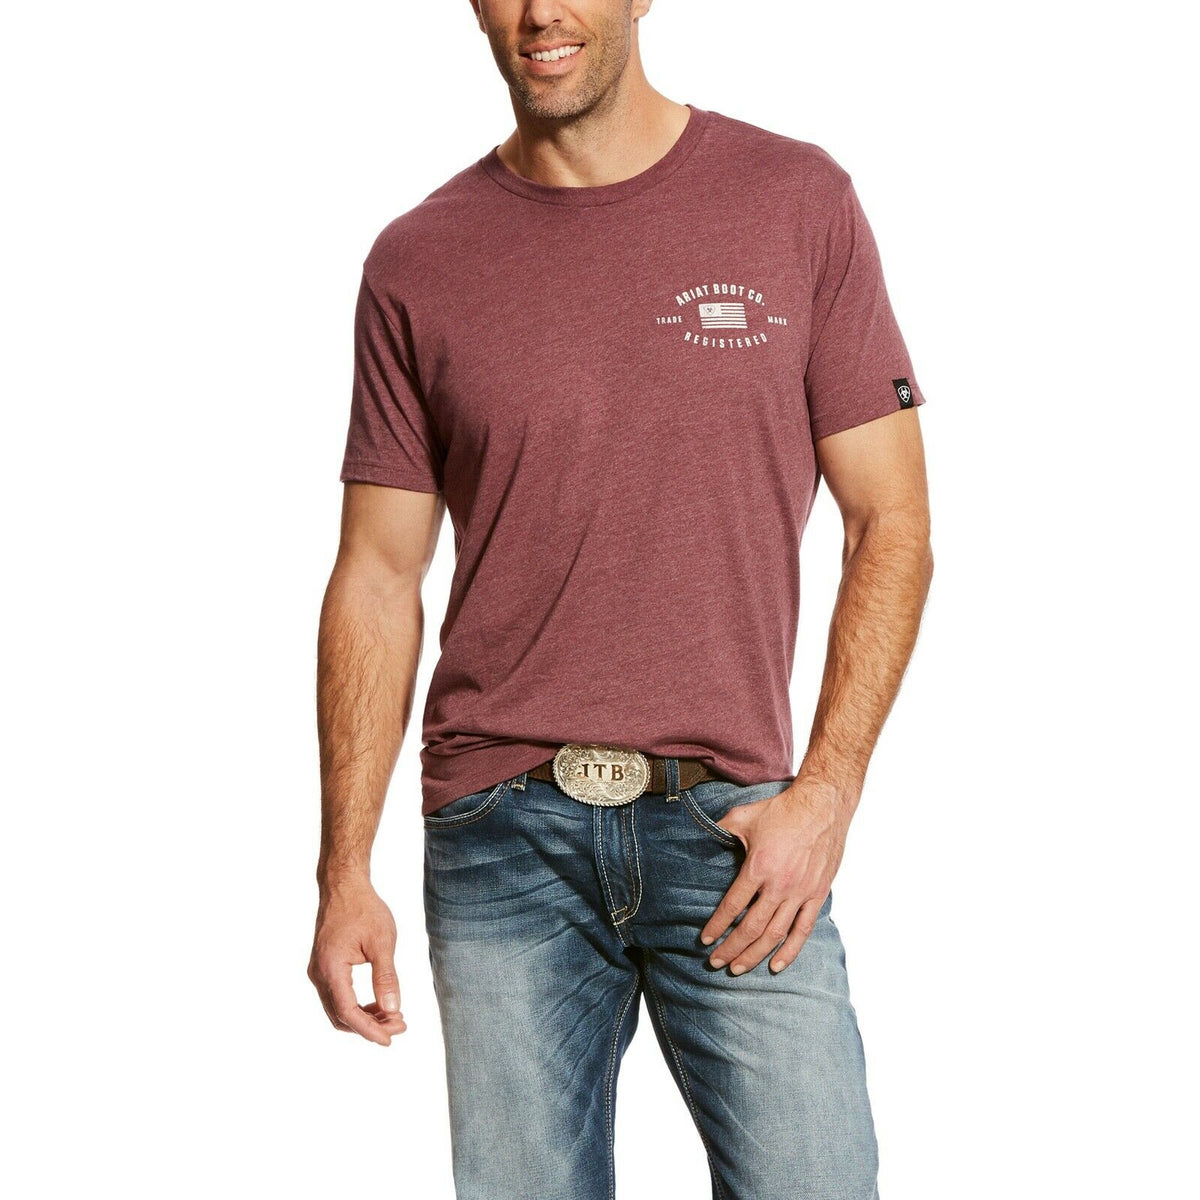 Ariat® Men S Us Registered Flag Burgundy Short Sleeve T Shirt 10024554 Wild West Boot Store